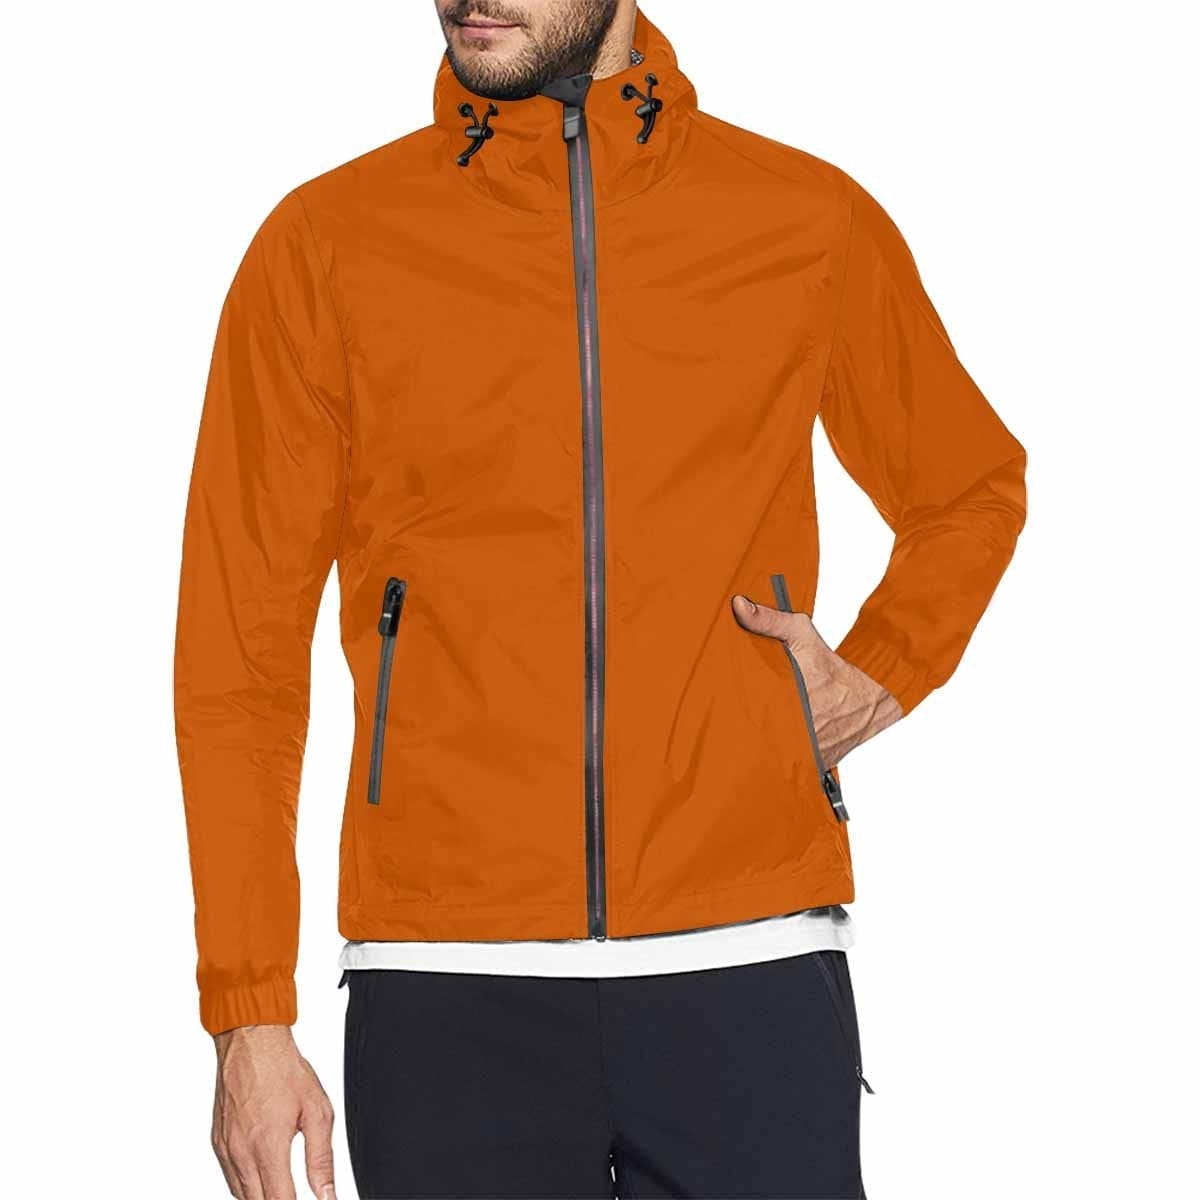 Burnt Orange Hooded Windbreaker Jacket - Men / Women - Mens | Jackets